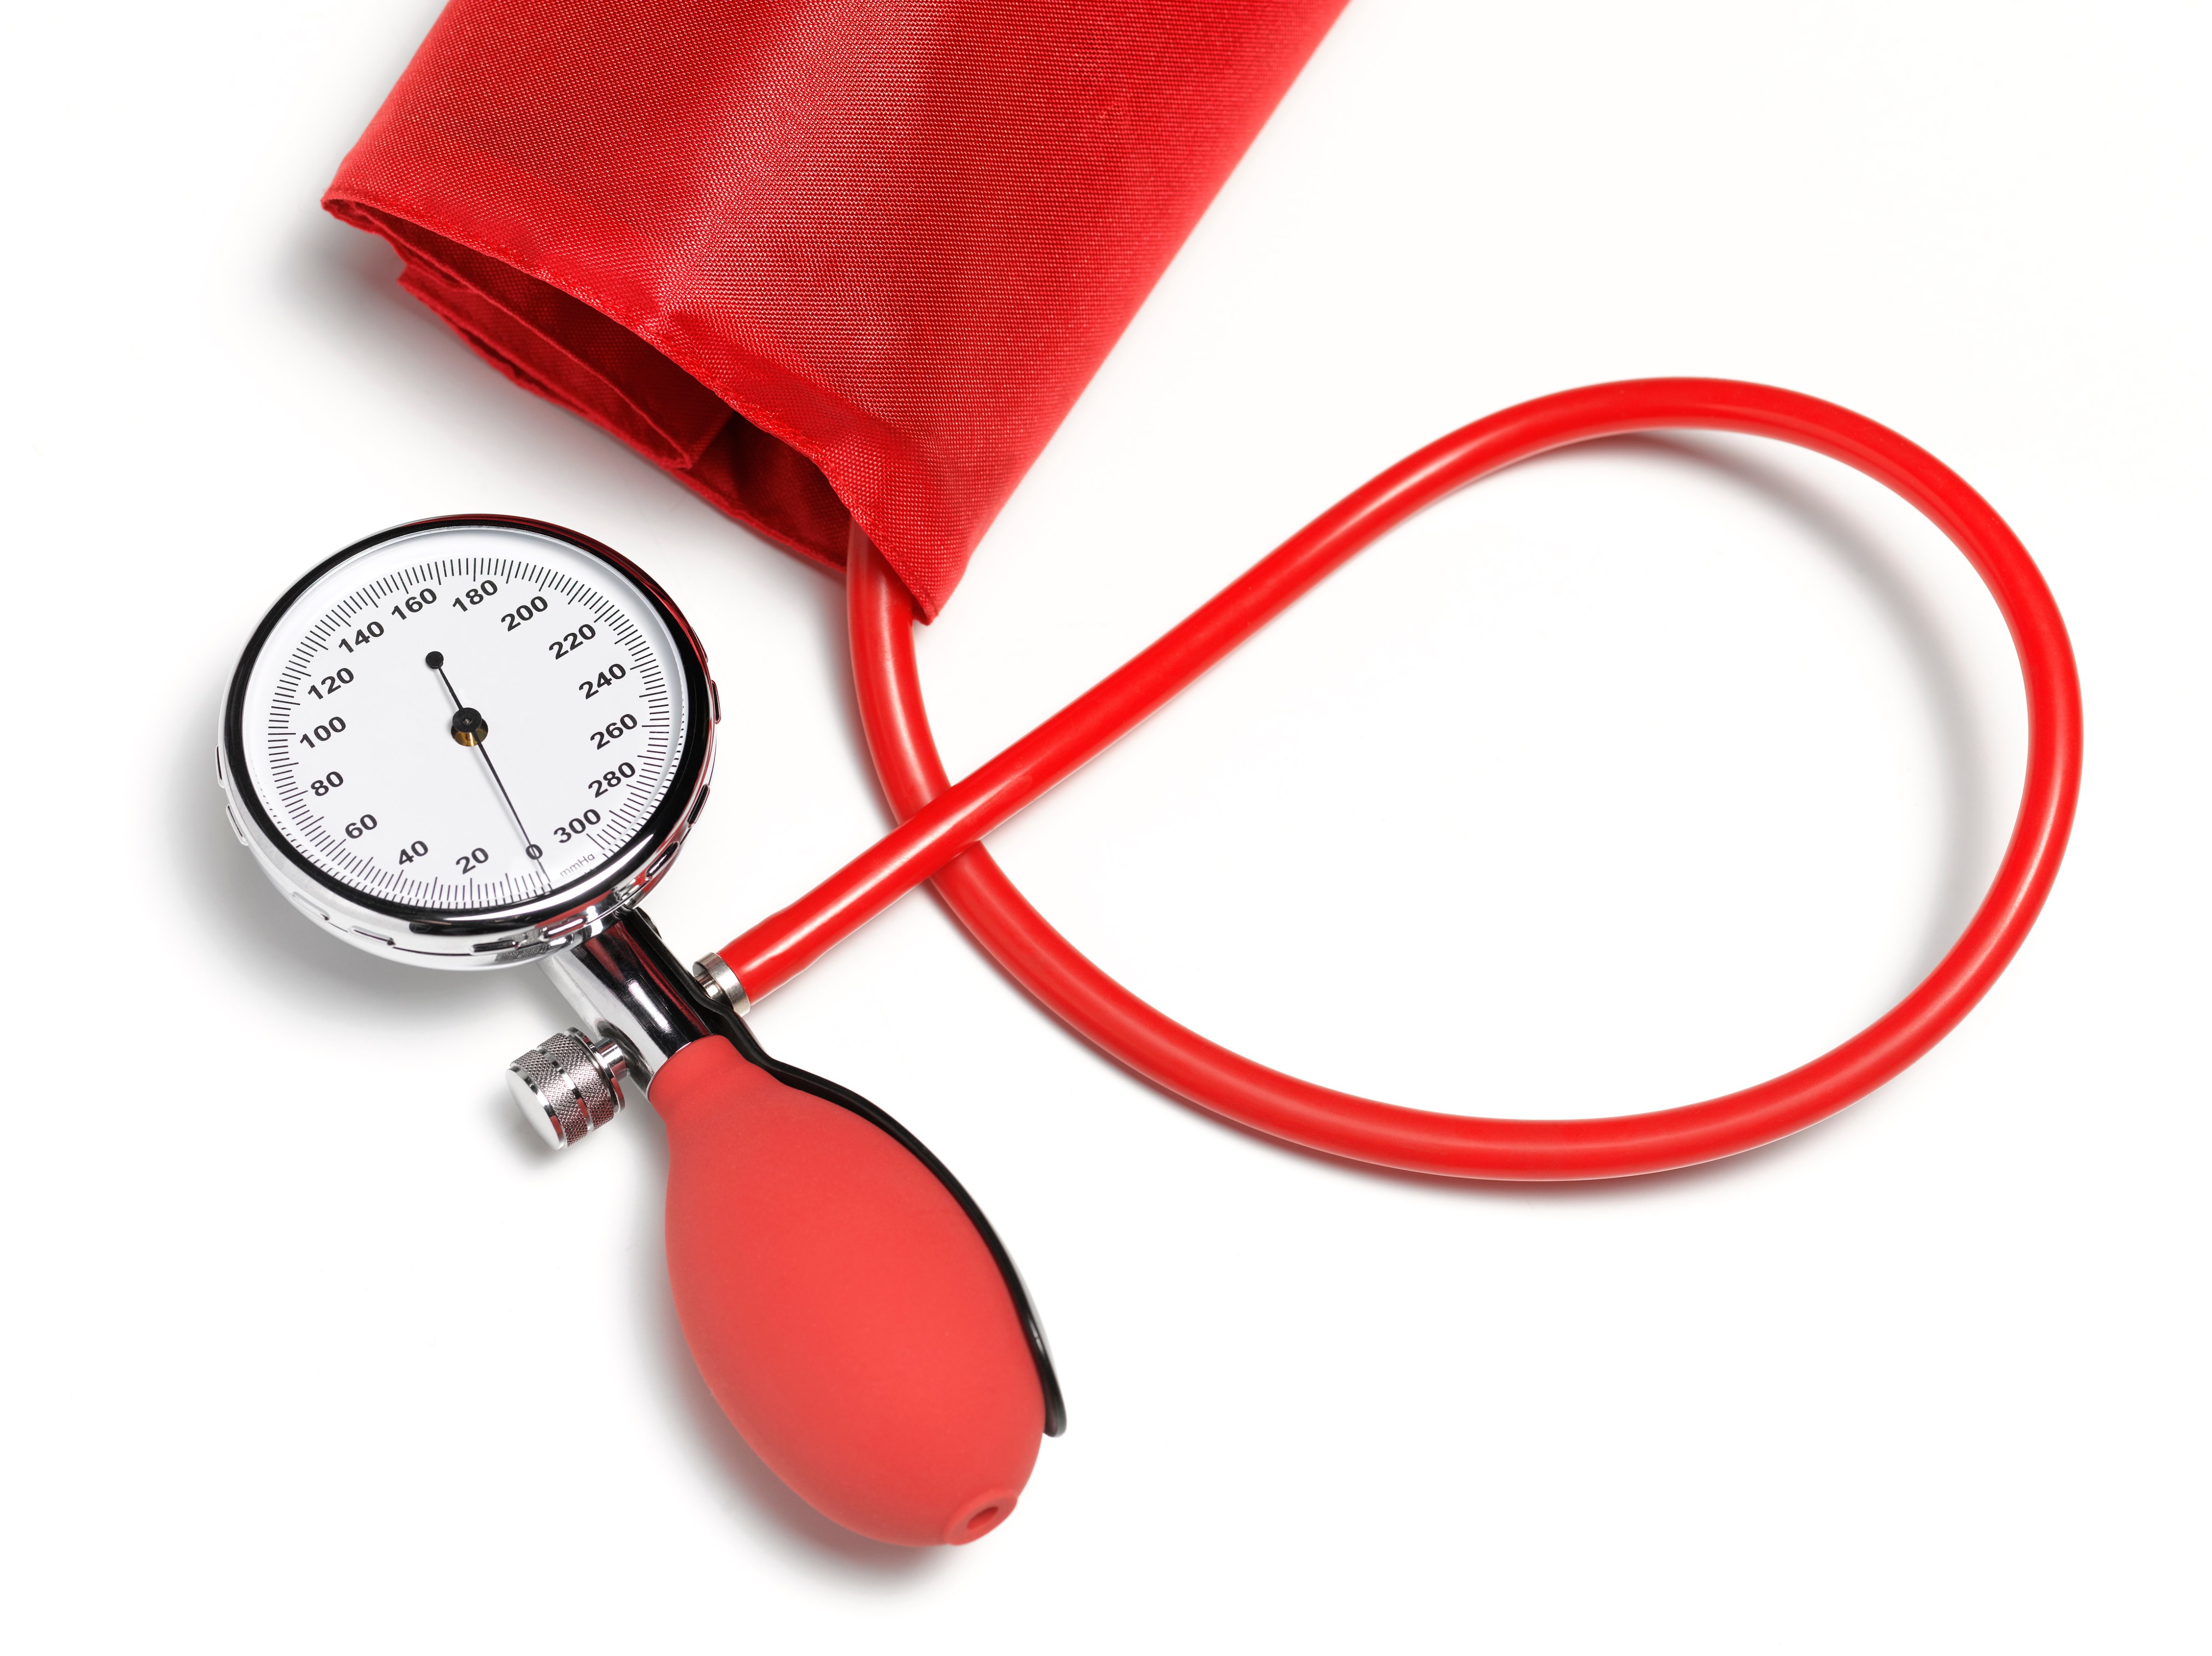 Sphygmomanometer, blood pressure gauge